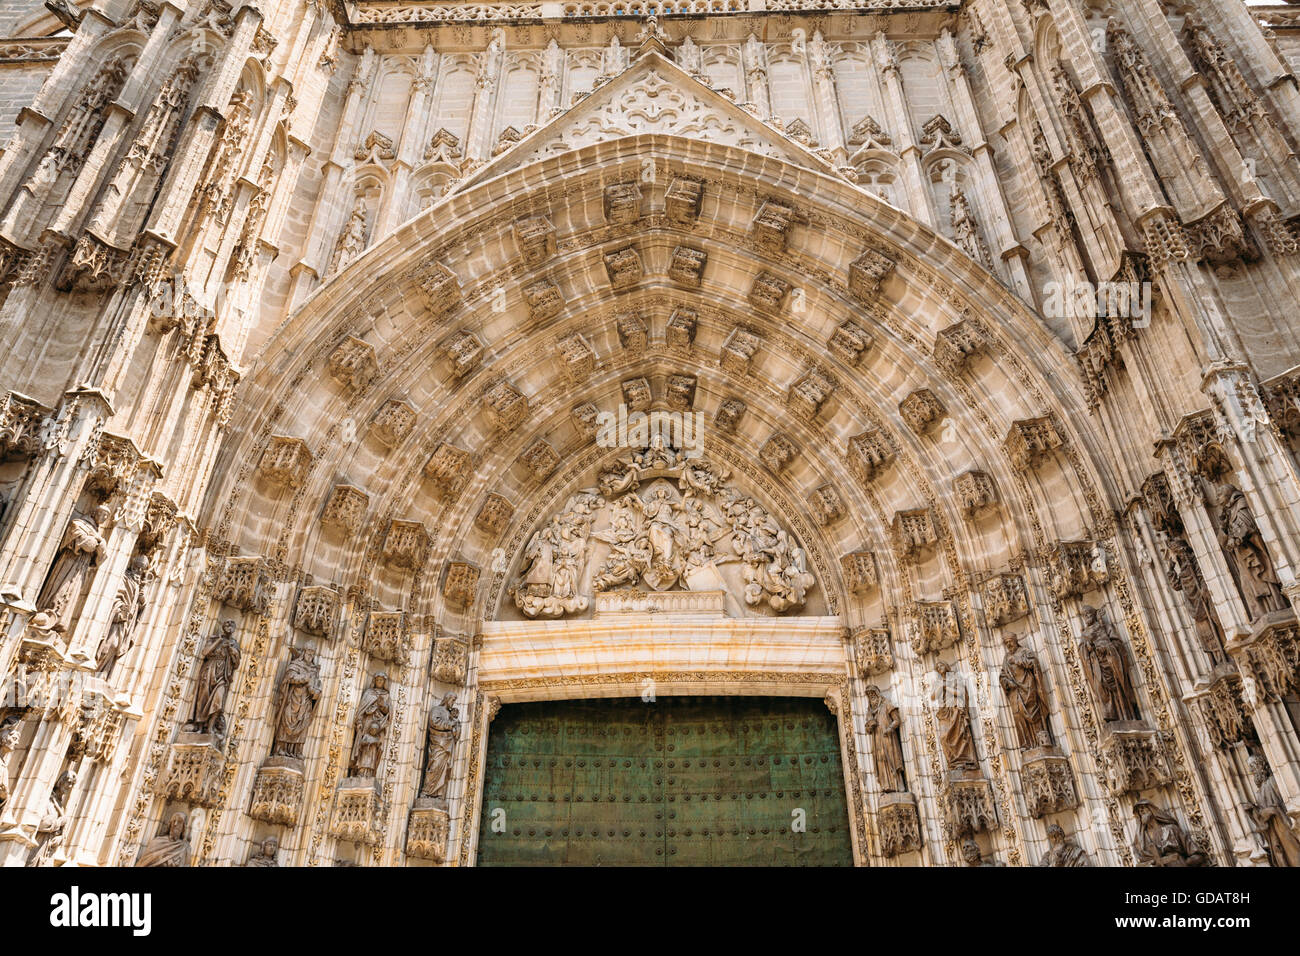 Entrada a la catedral de Sevilla, España. Detalle de la pared. Antiguos de la arquitectura. Famosos. Foto de stock